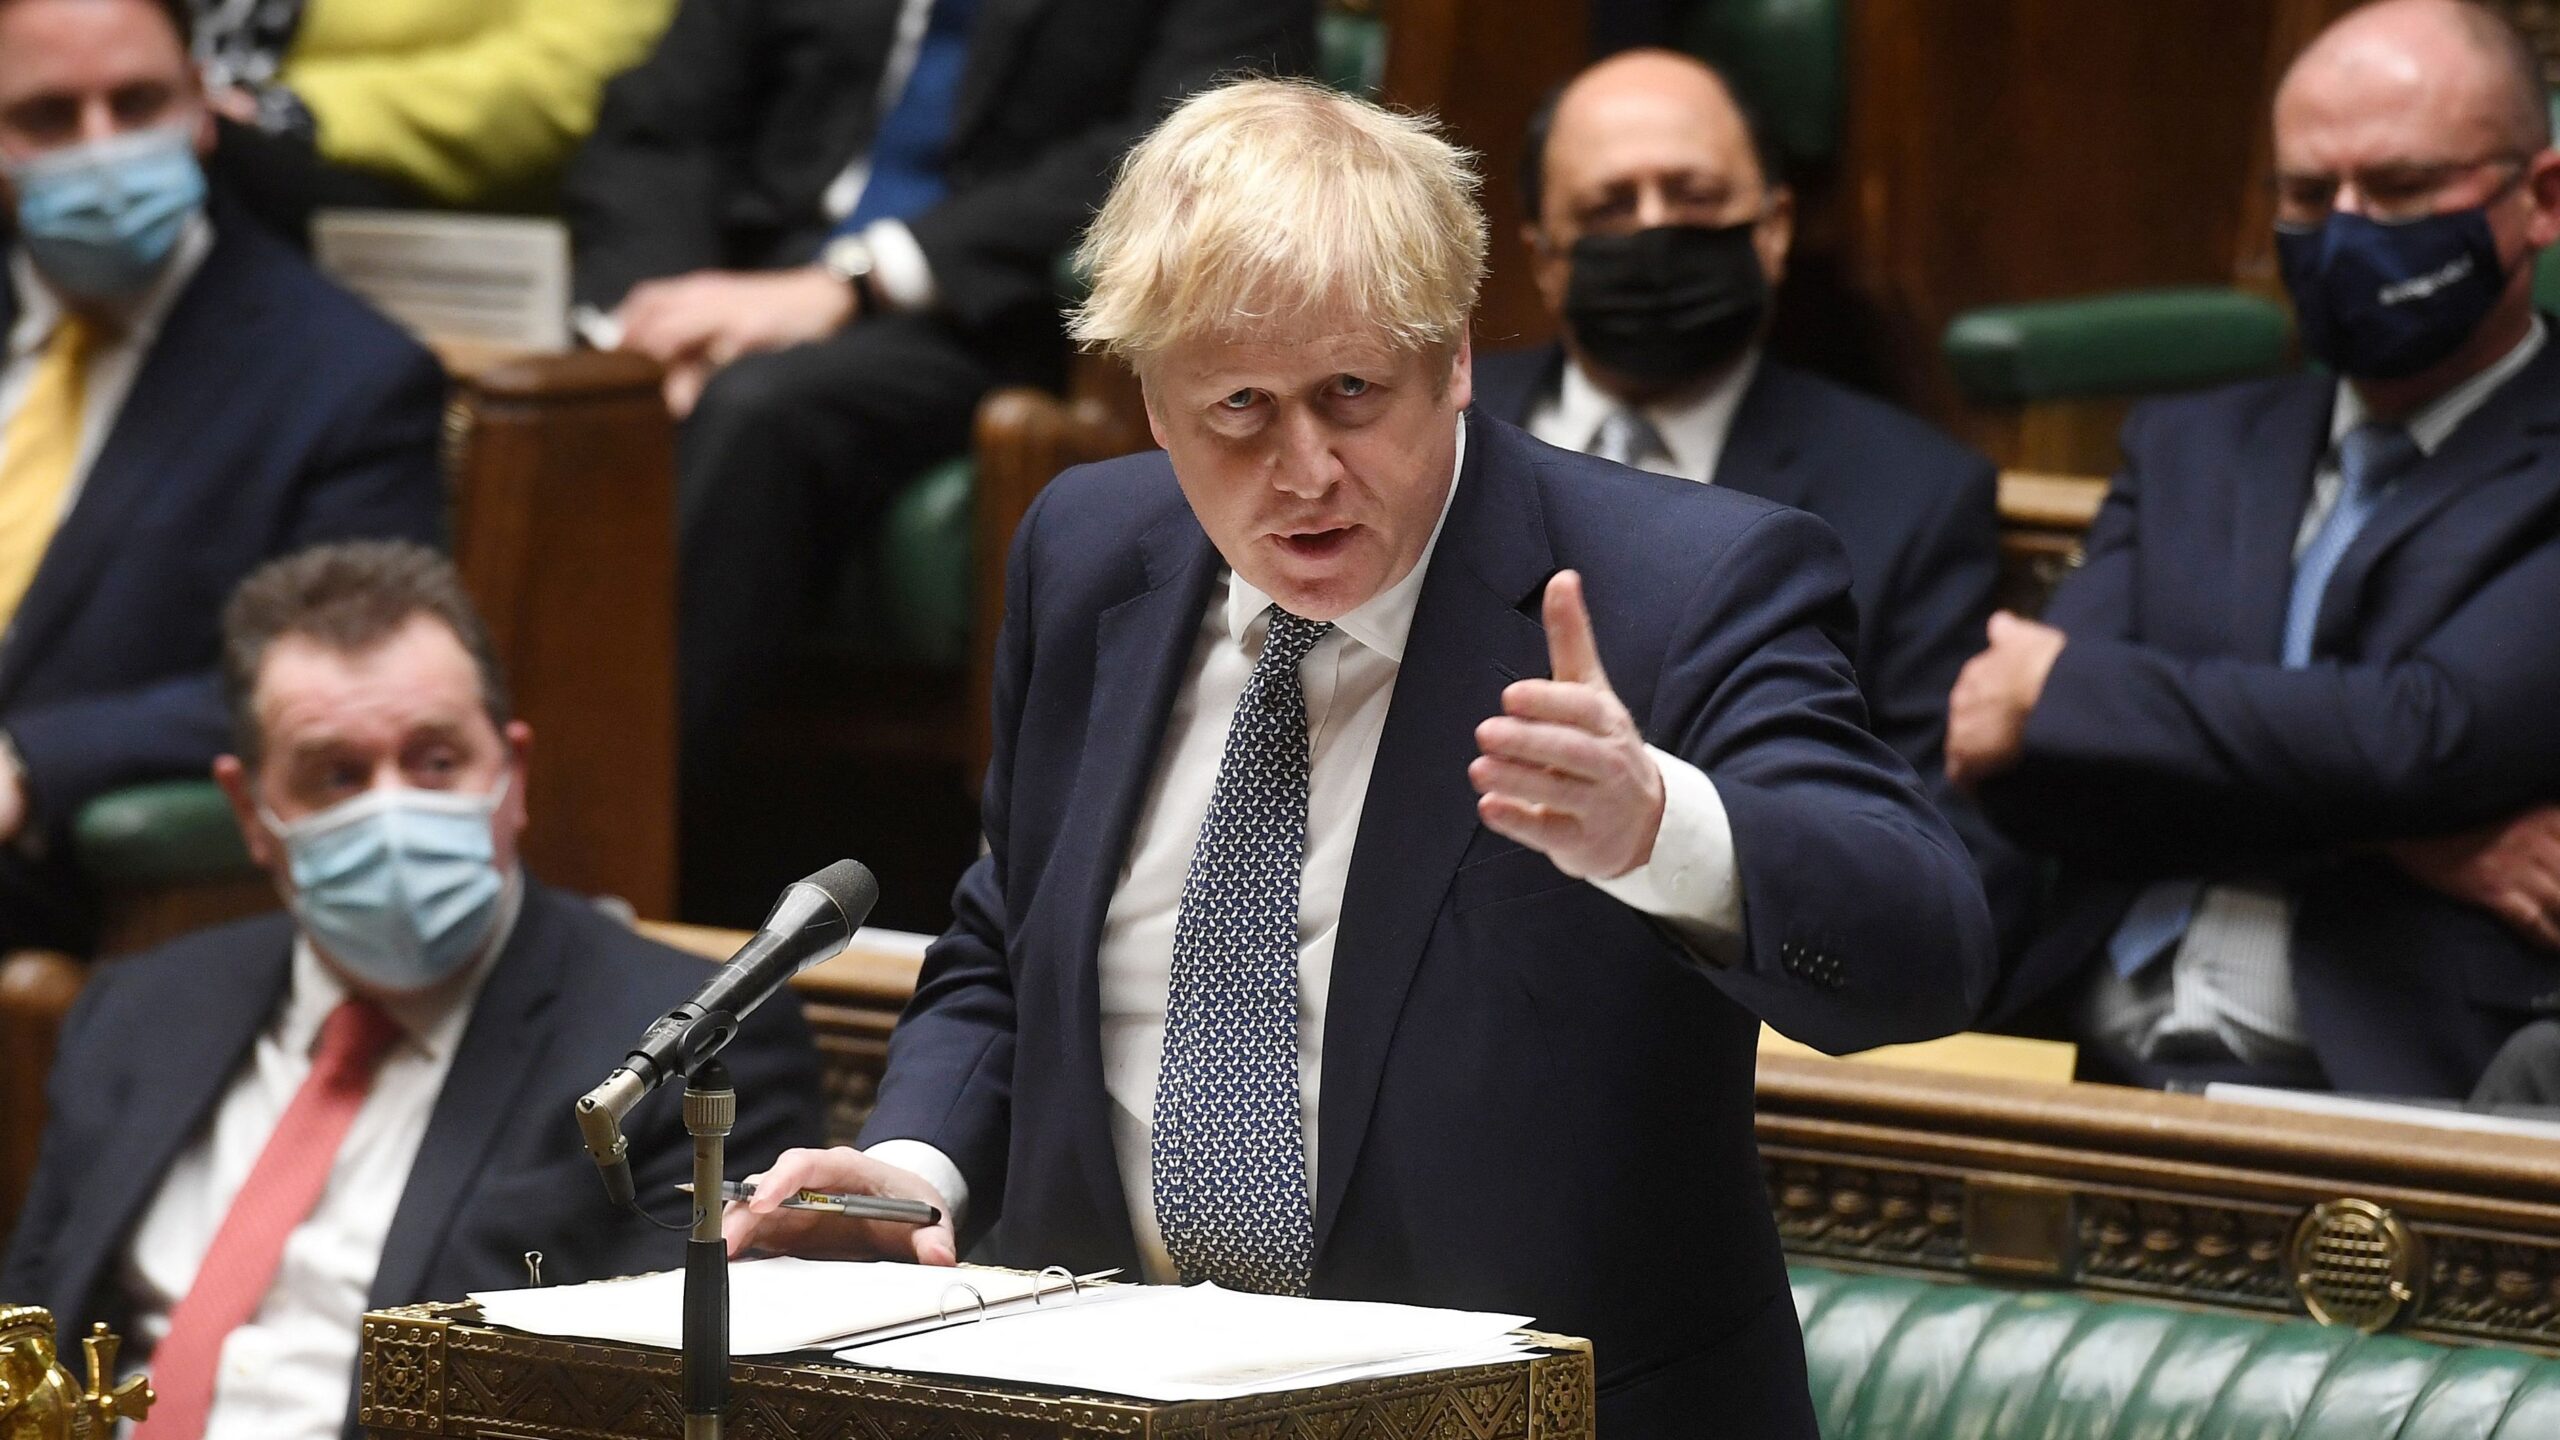 Vídeo en directo | Boris Johnson comparece en el Parlamento en plena polémica por las fiestas de Downing Street